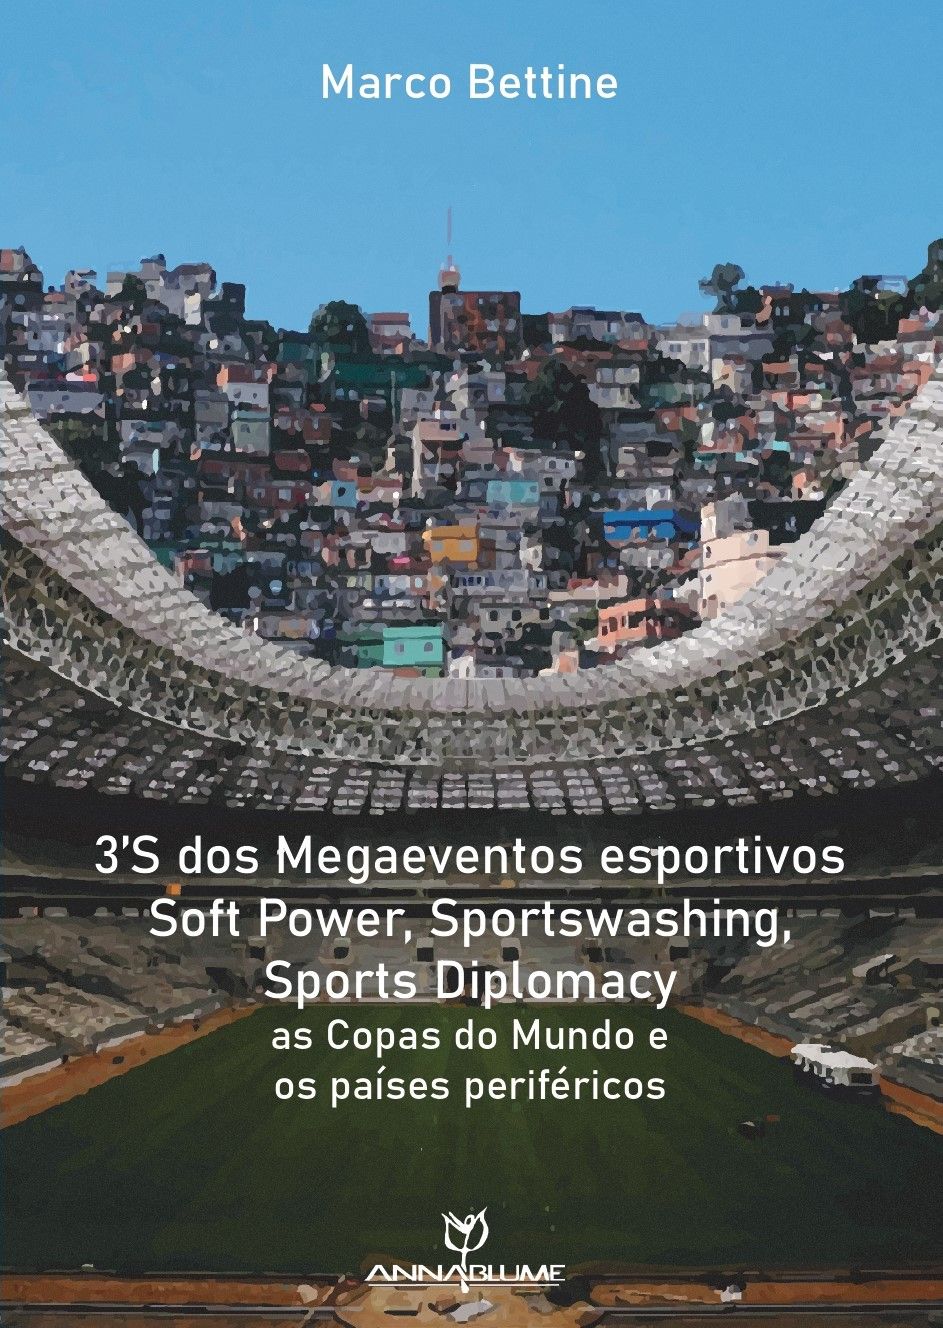 3S dos Megaeventos esportivos  Soft Power, Sportswashing, Sports Diplomacy: as Copas do Mundo e os países periféricos